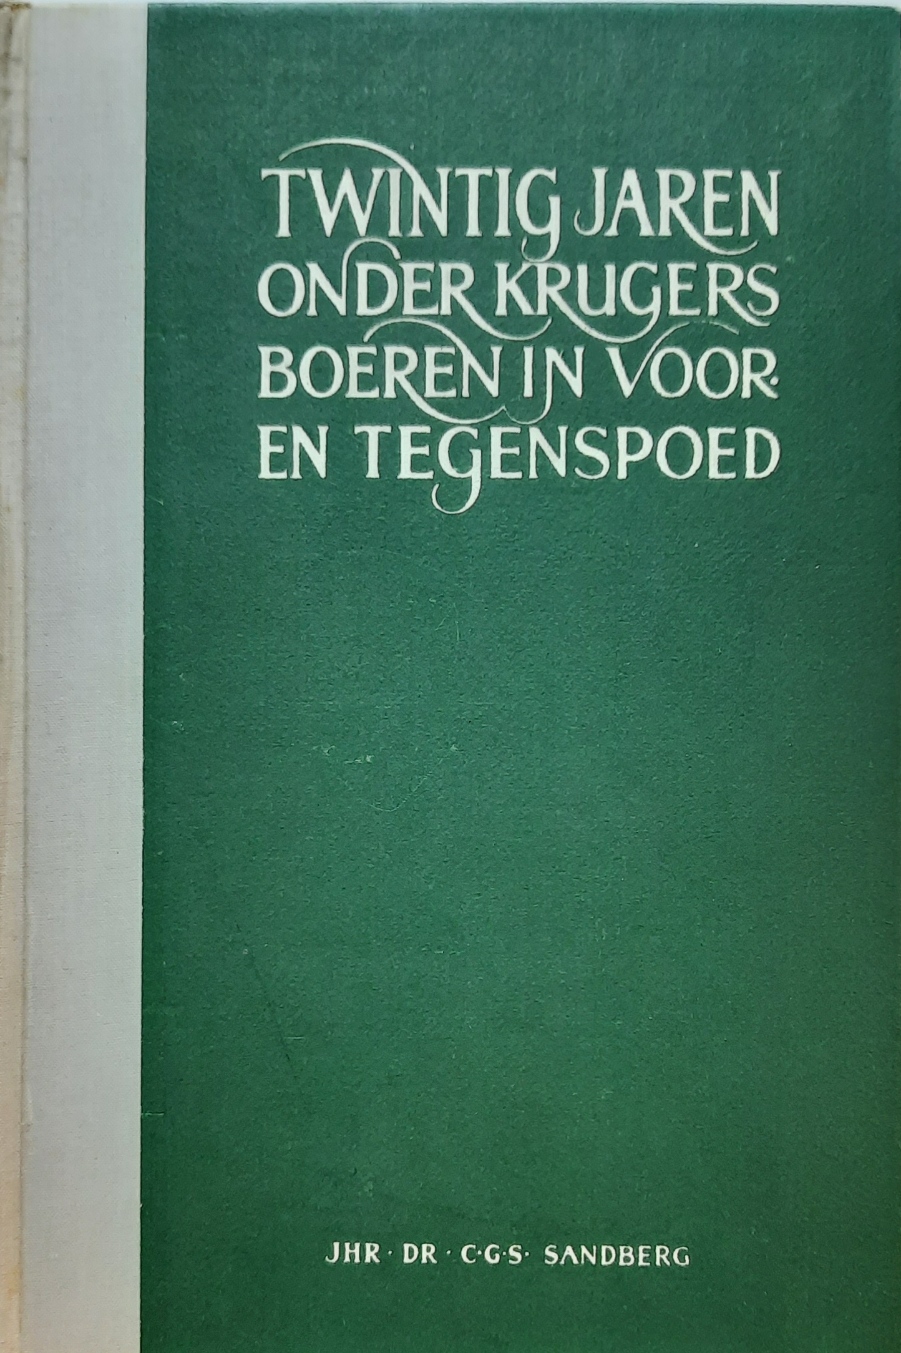 Book cover 202106272357: SANDBERG C.G.S. Dr Jhr | Twintig jaren onder Krugers Boeren in voor- en tegenspoed